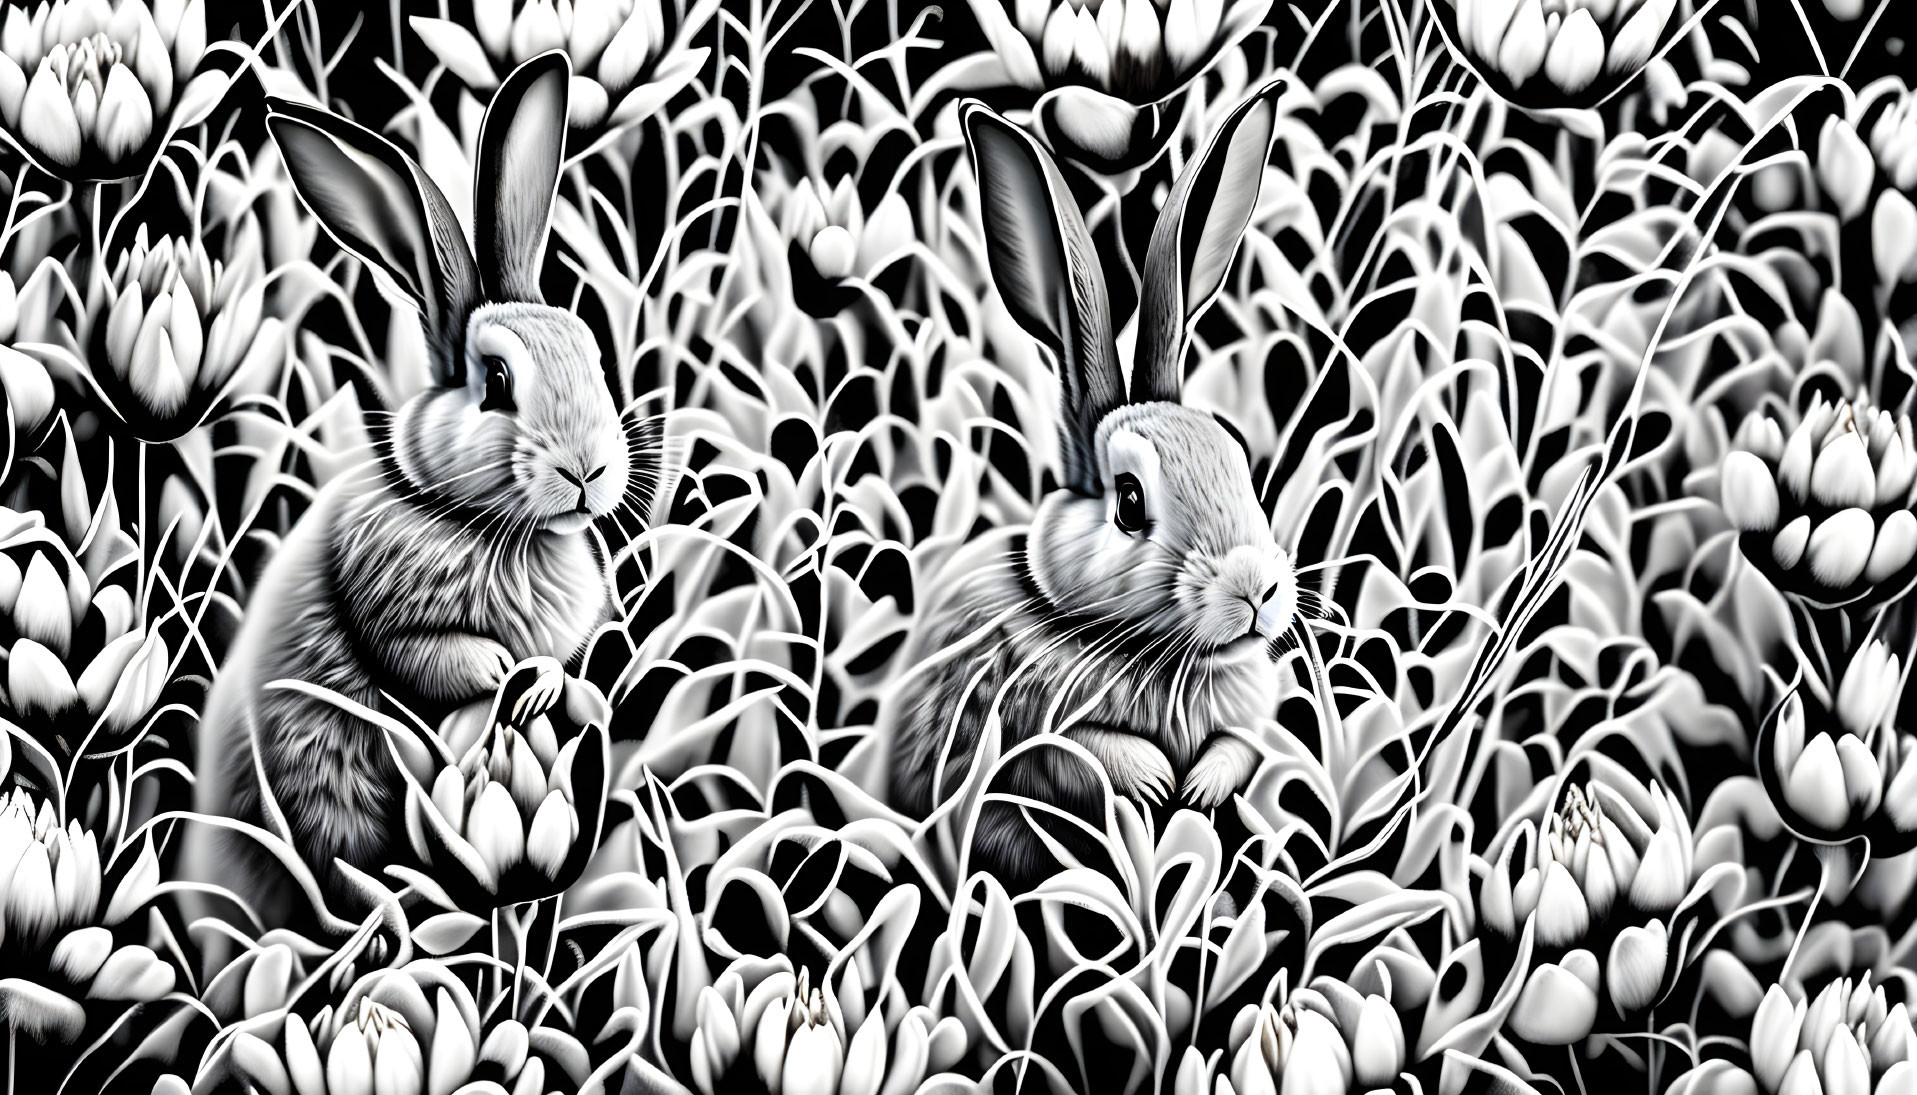  Black & White Rabbits